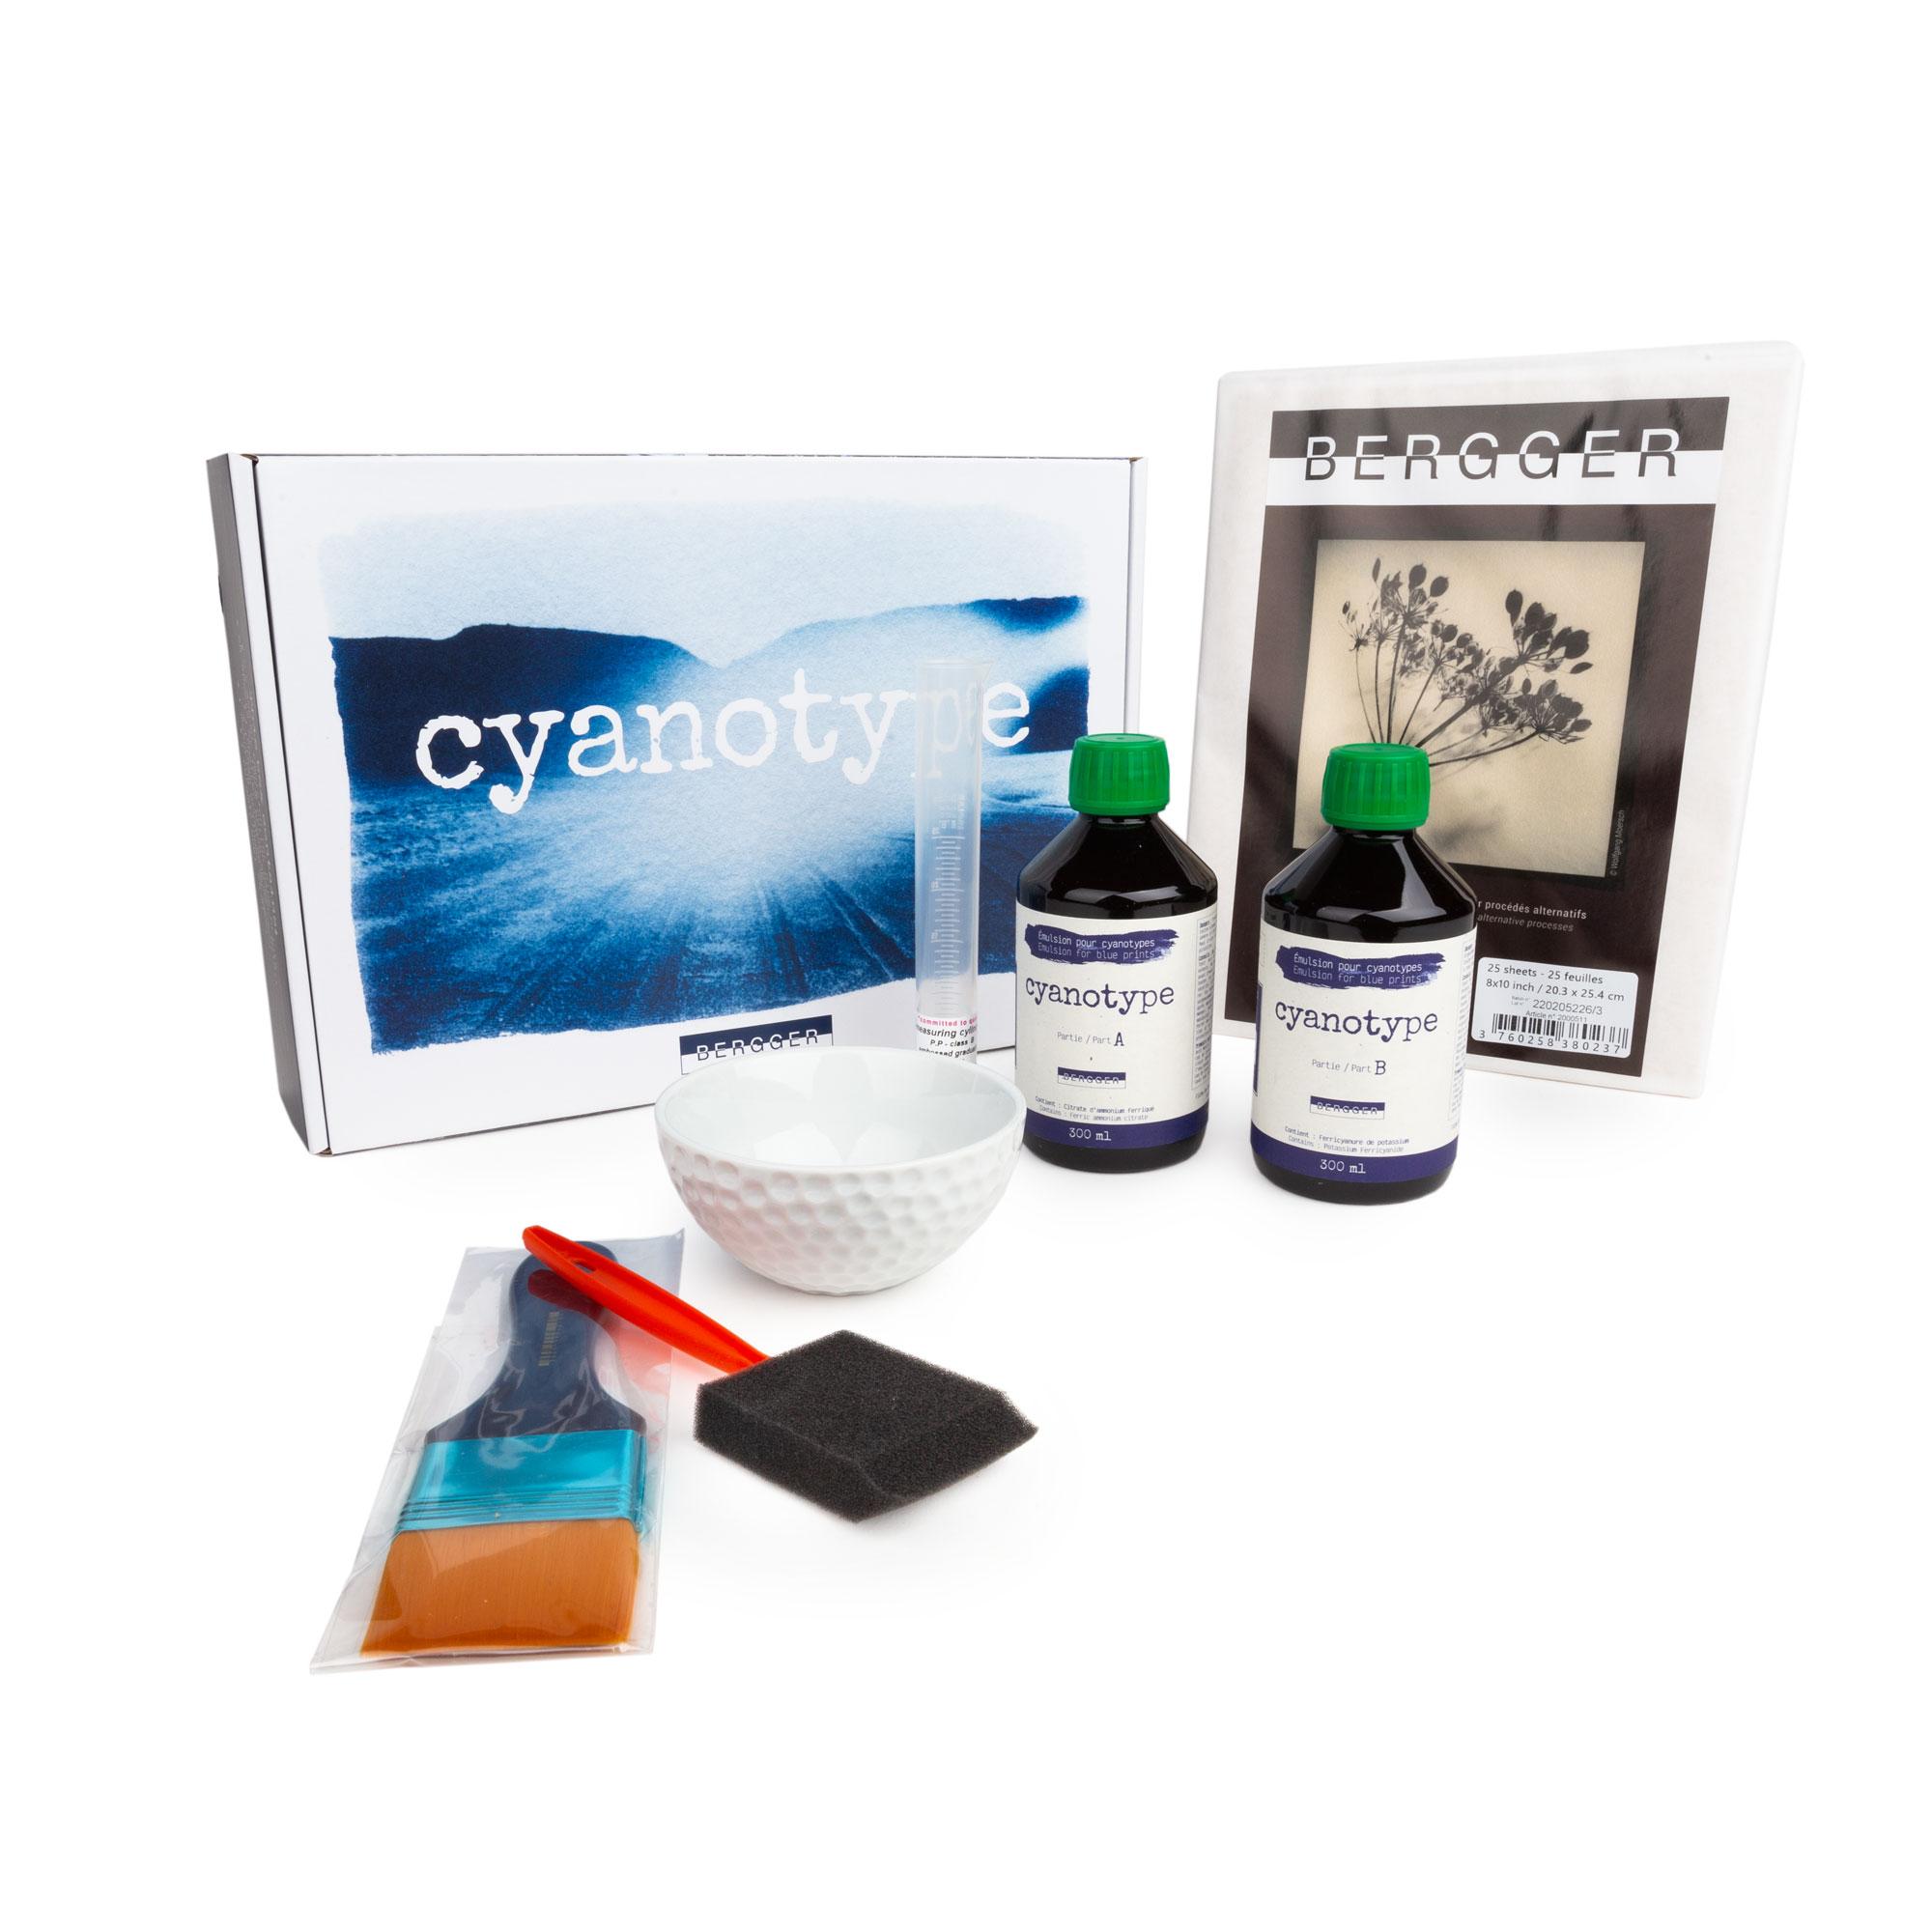  Kit cyanotype Bergger